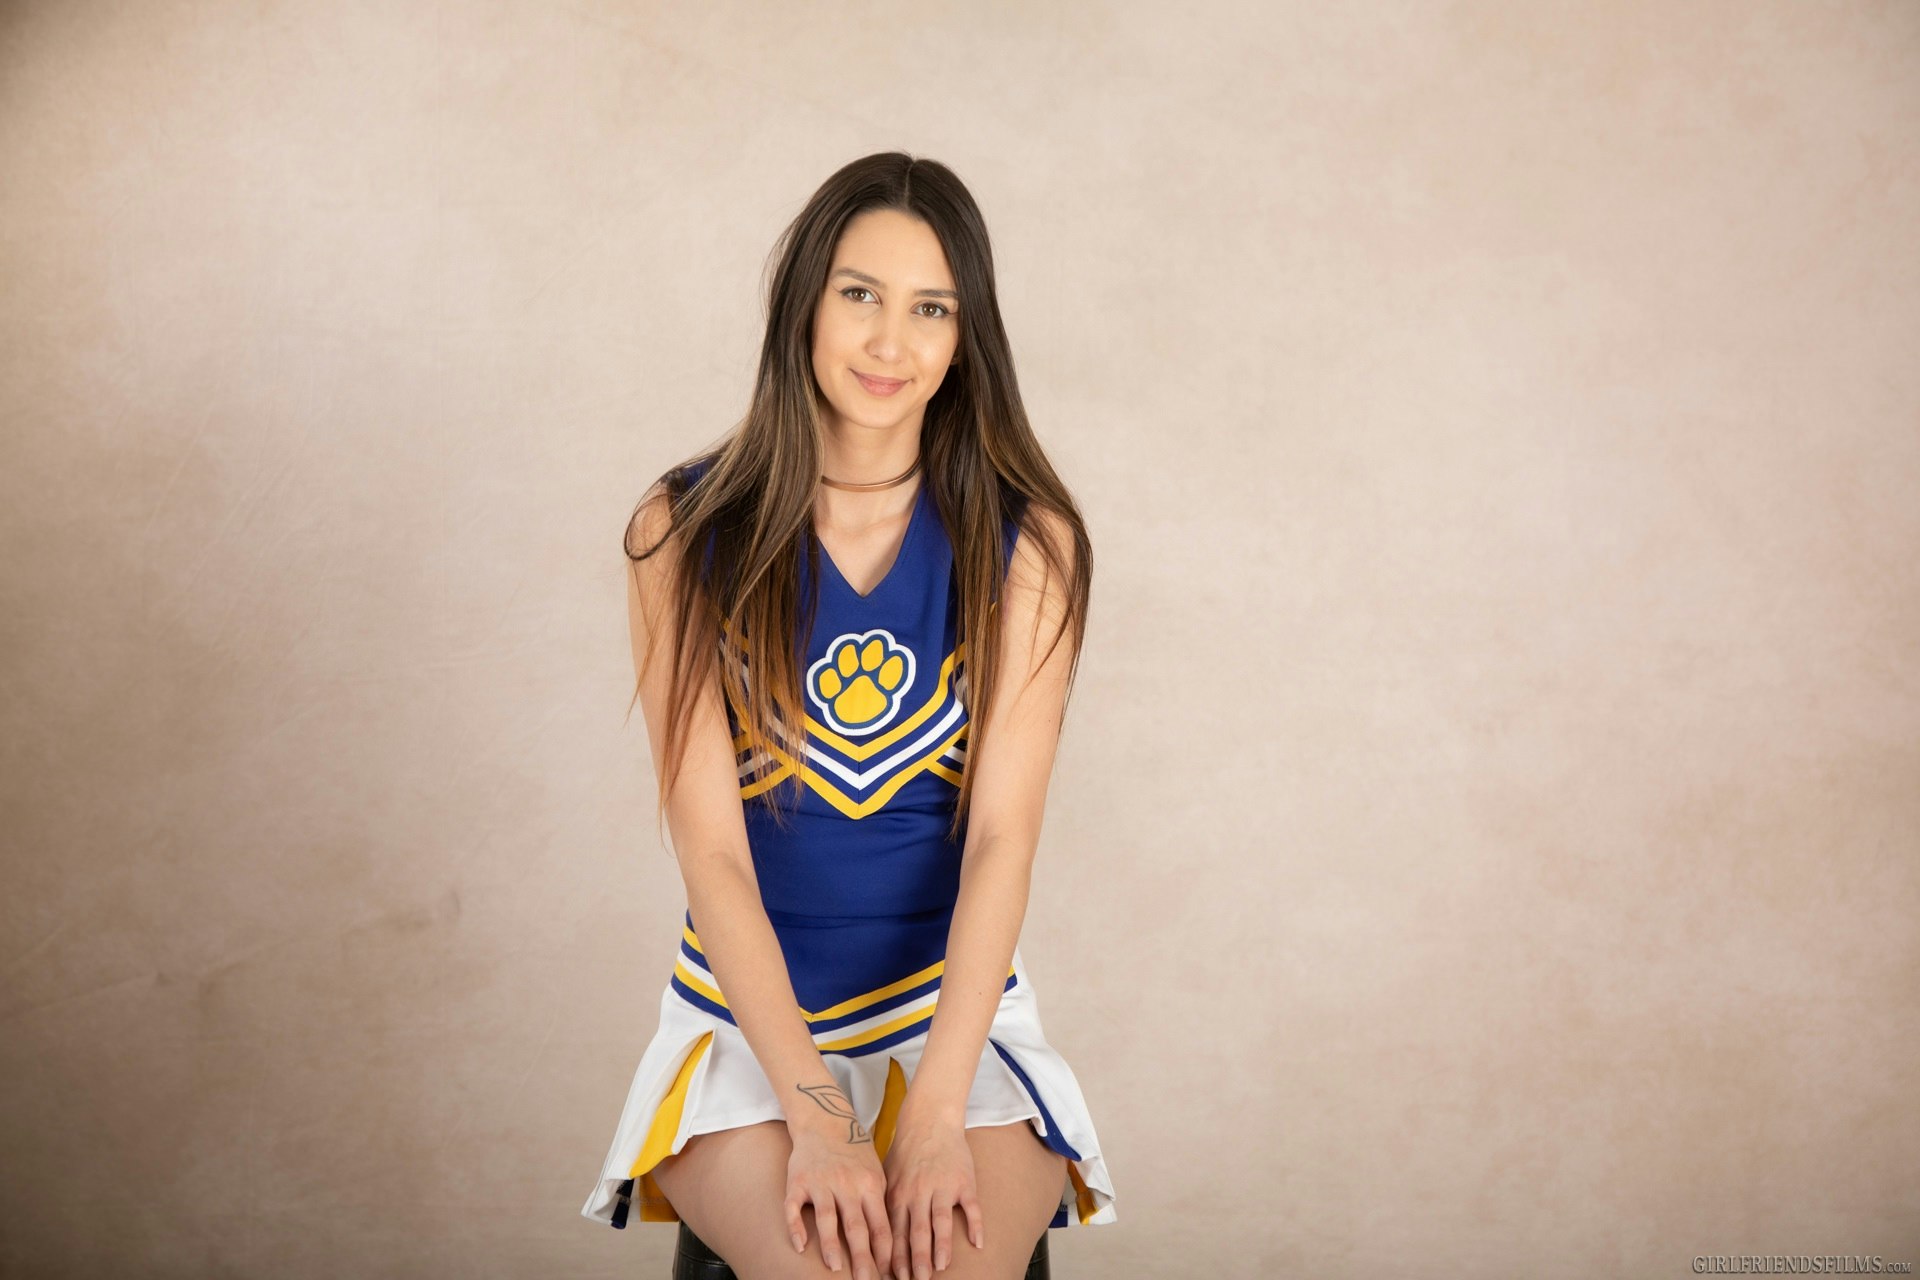 Andreina Deluxe smiling in her cheer uniform.